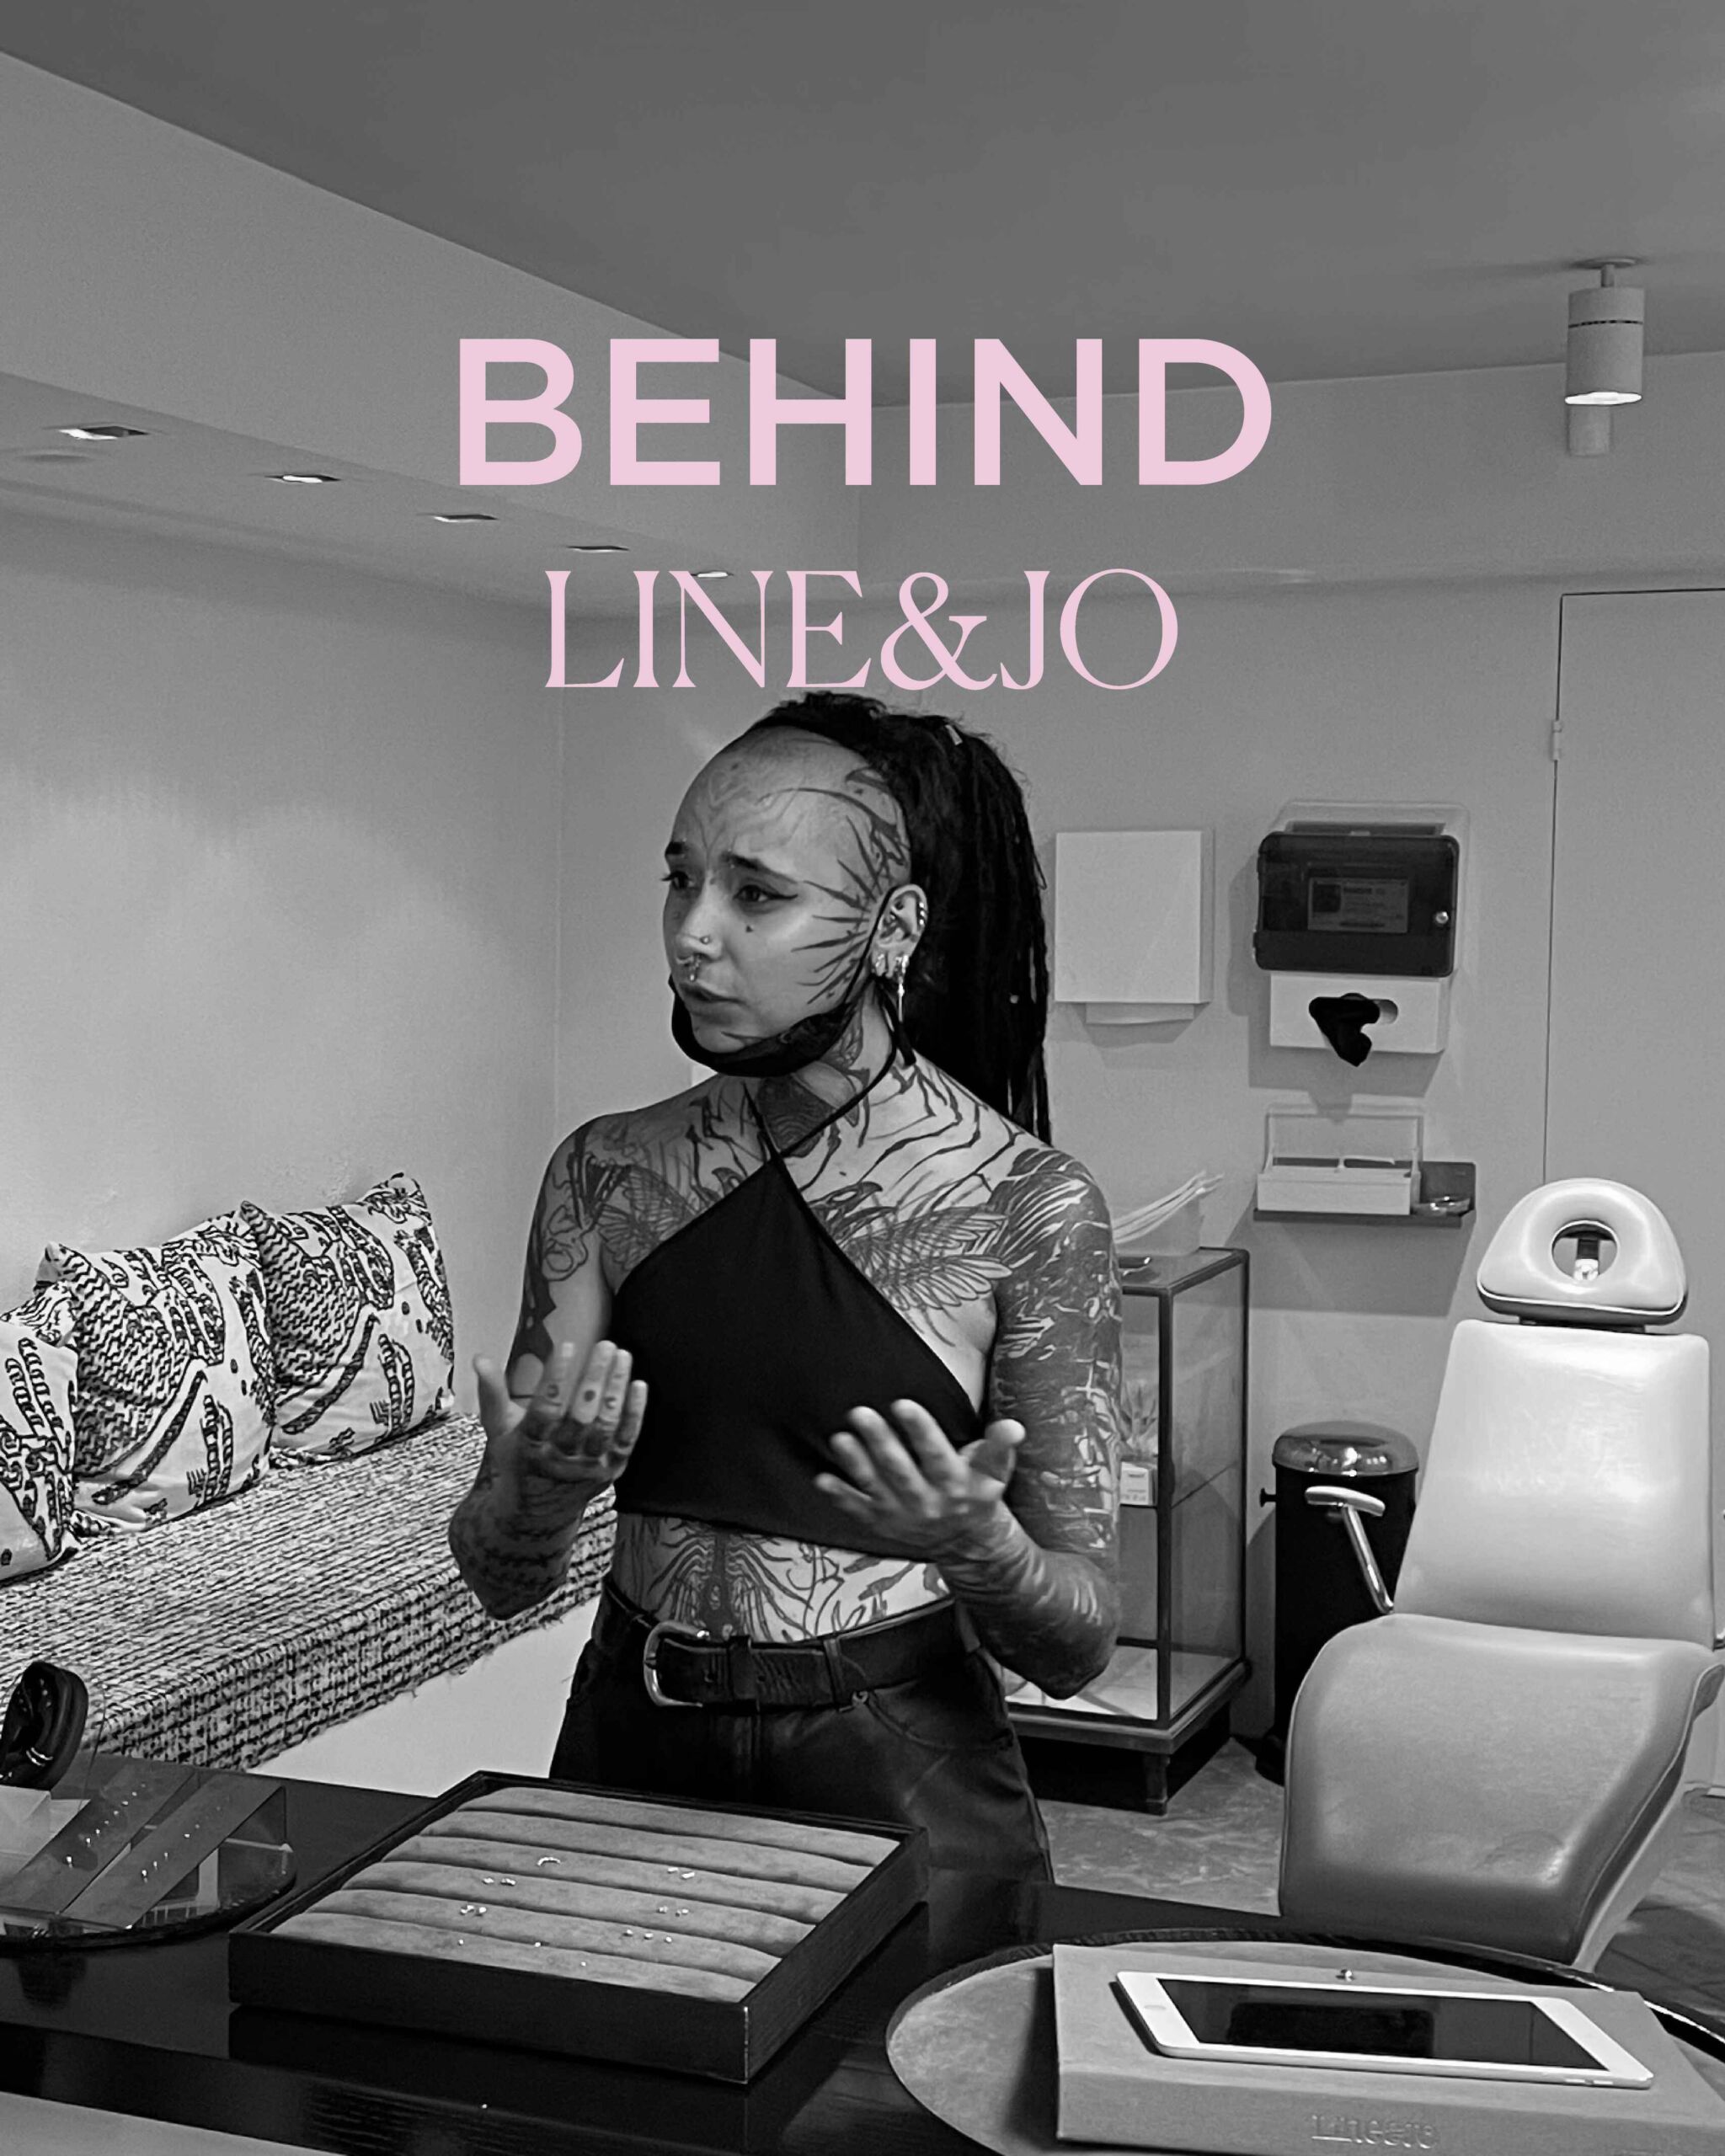 Behind LINE&JO: Head of piercings, Filipa